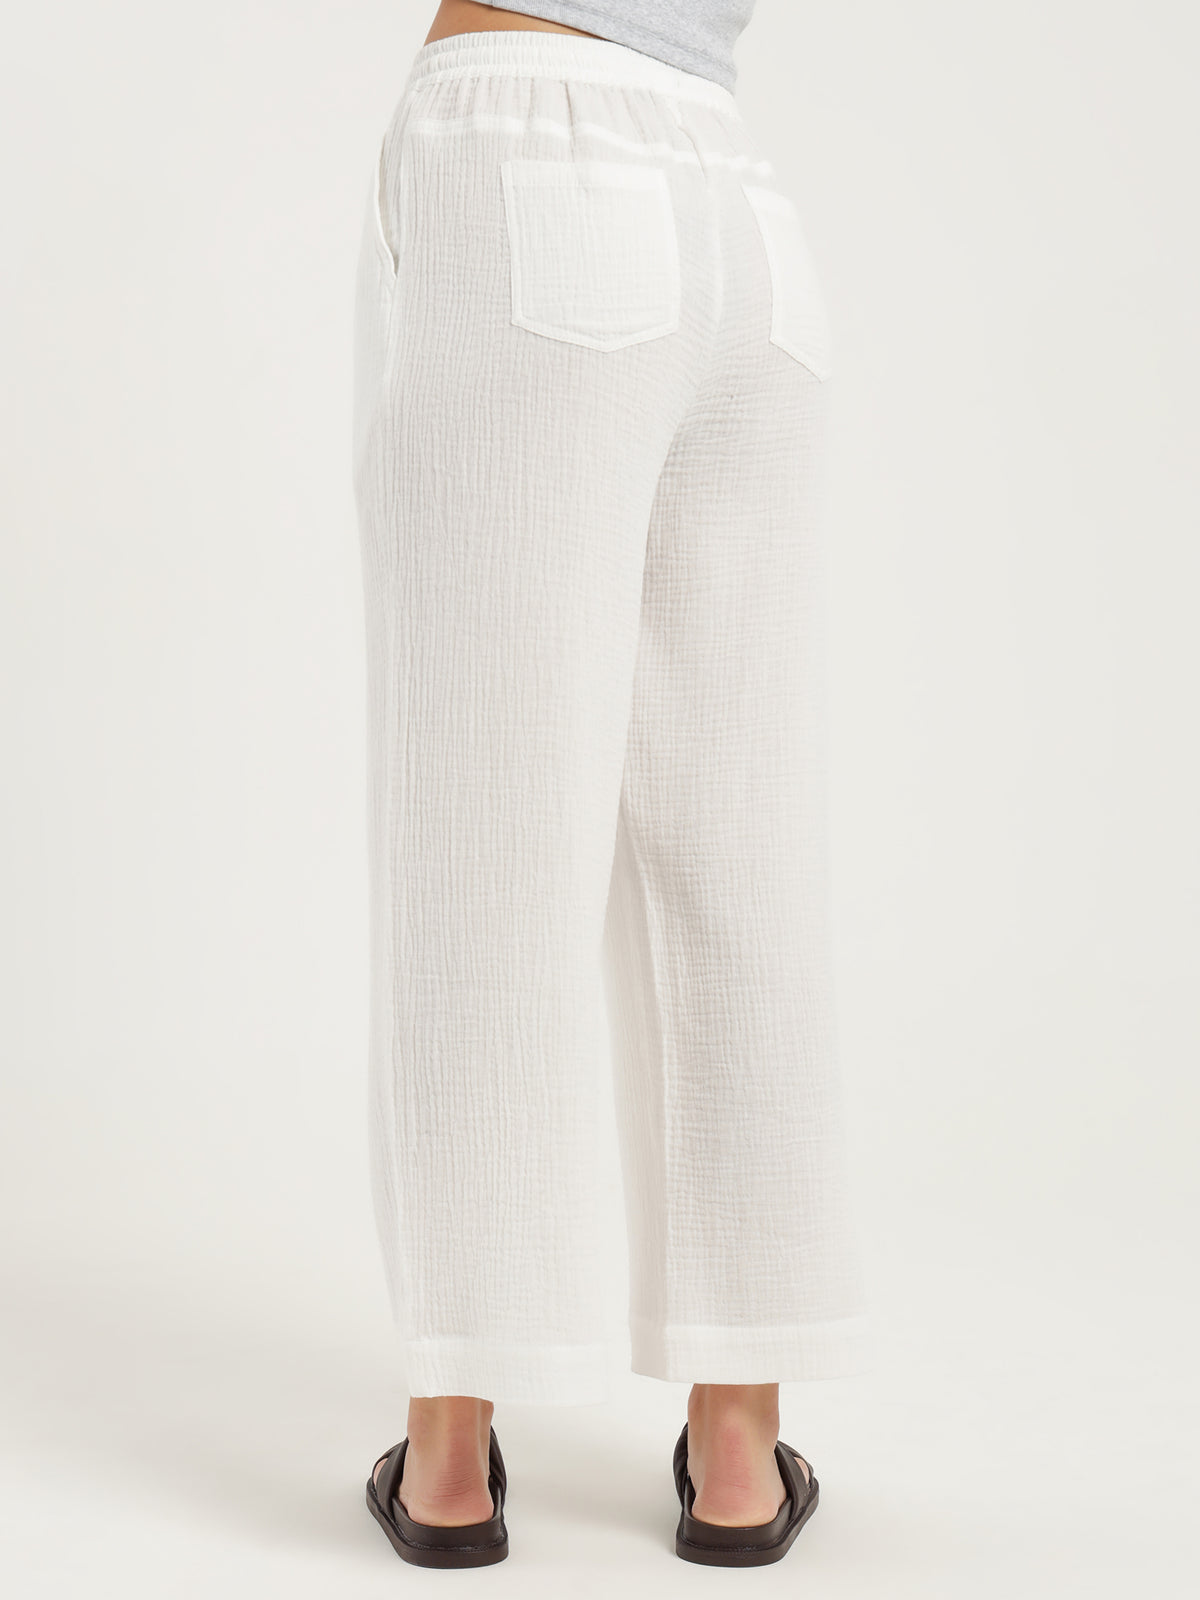 Jolene Drawstring Pants in Off White